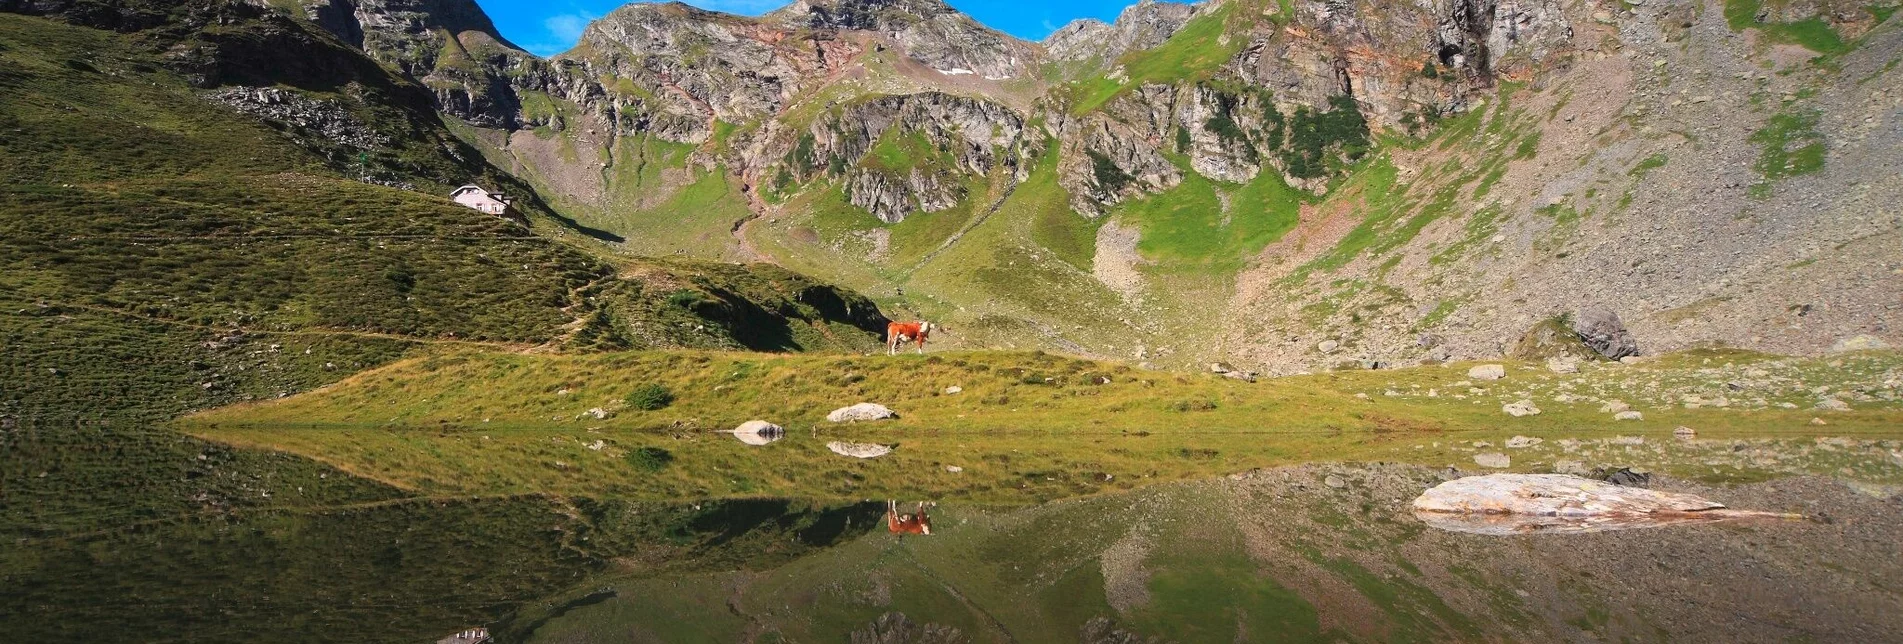 Hiking route Keinprechthütte chalet – inviting alpine peaks all around - Touren-Impression #1 | © Photo Austria - Martin Huber